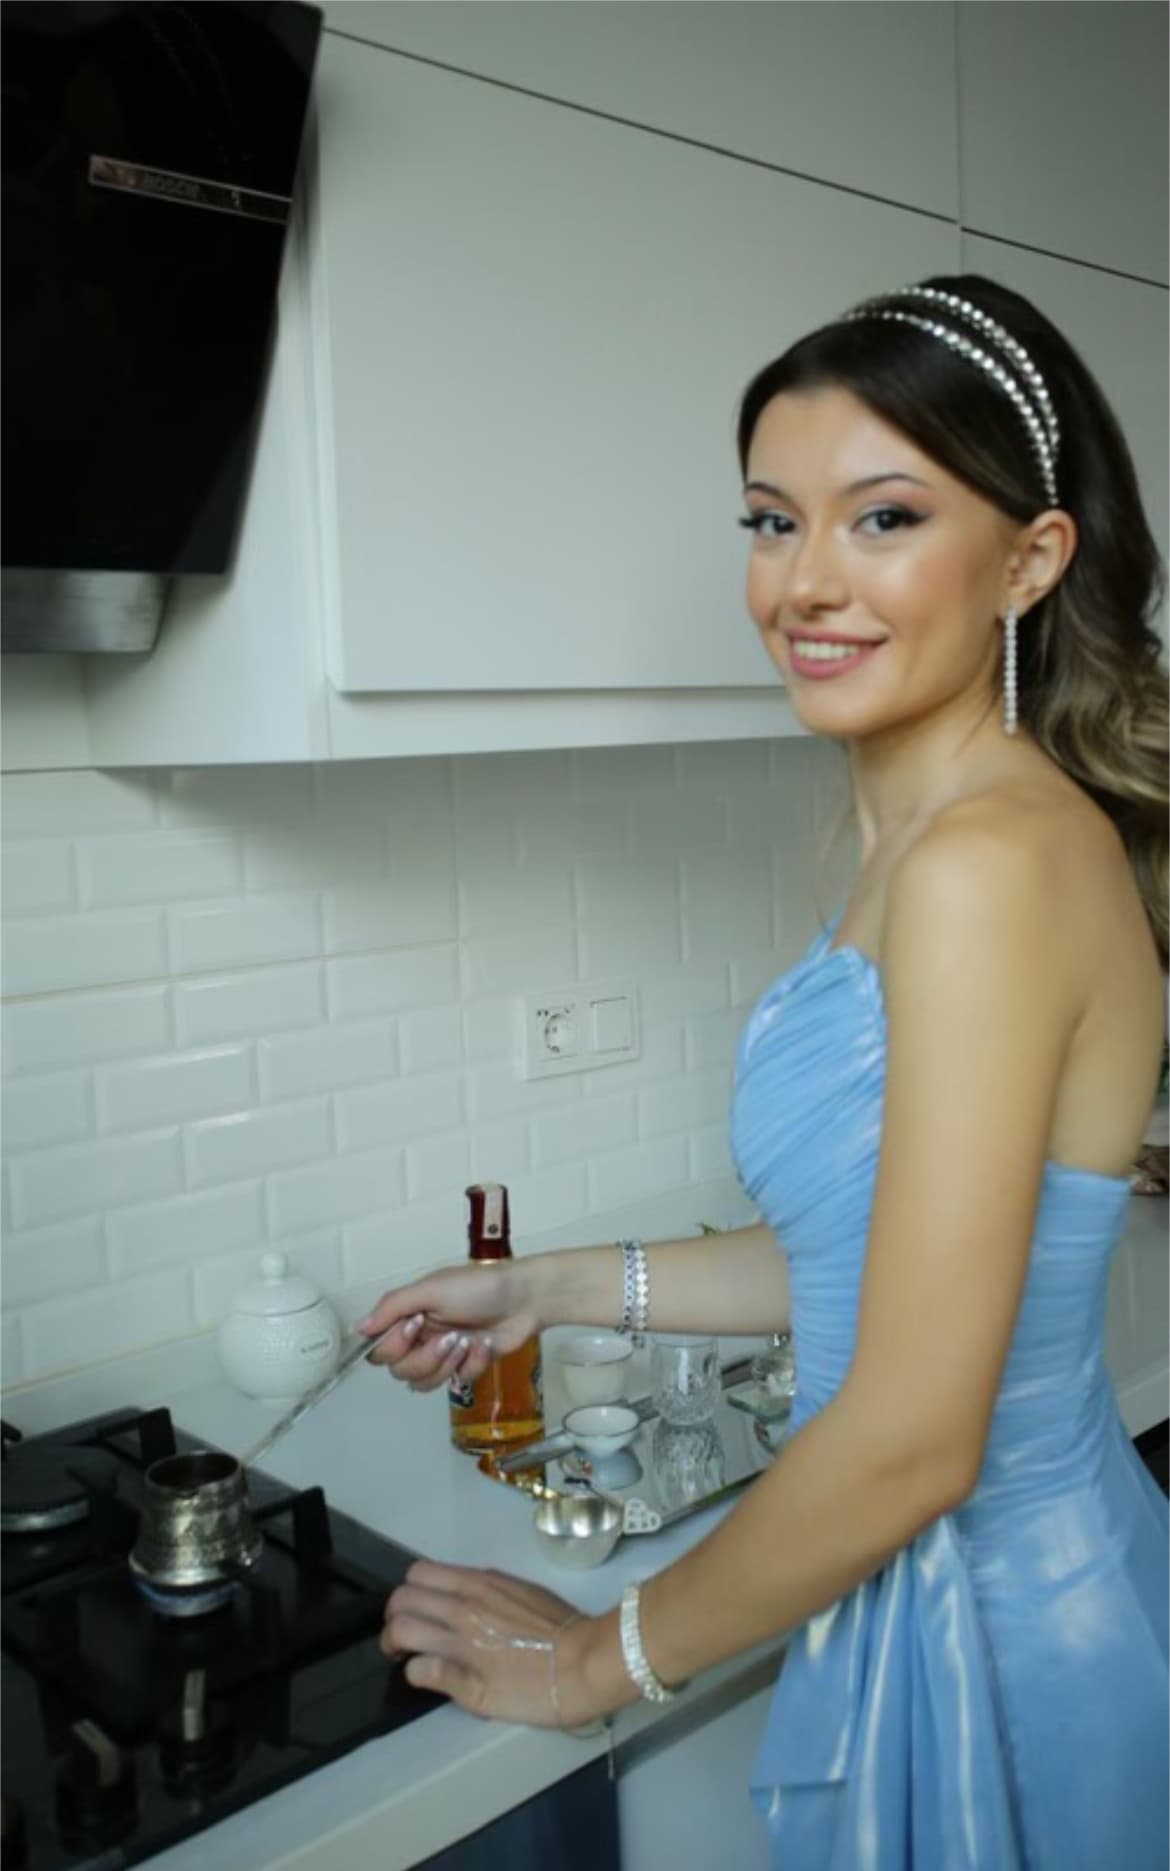 Mavi bir elbise giyen genç kadın, modern bir mutfakta Türk kahvesi hazırlıyor.